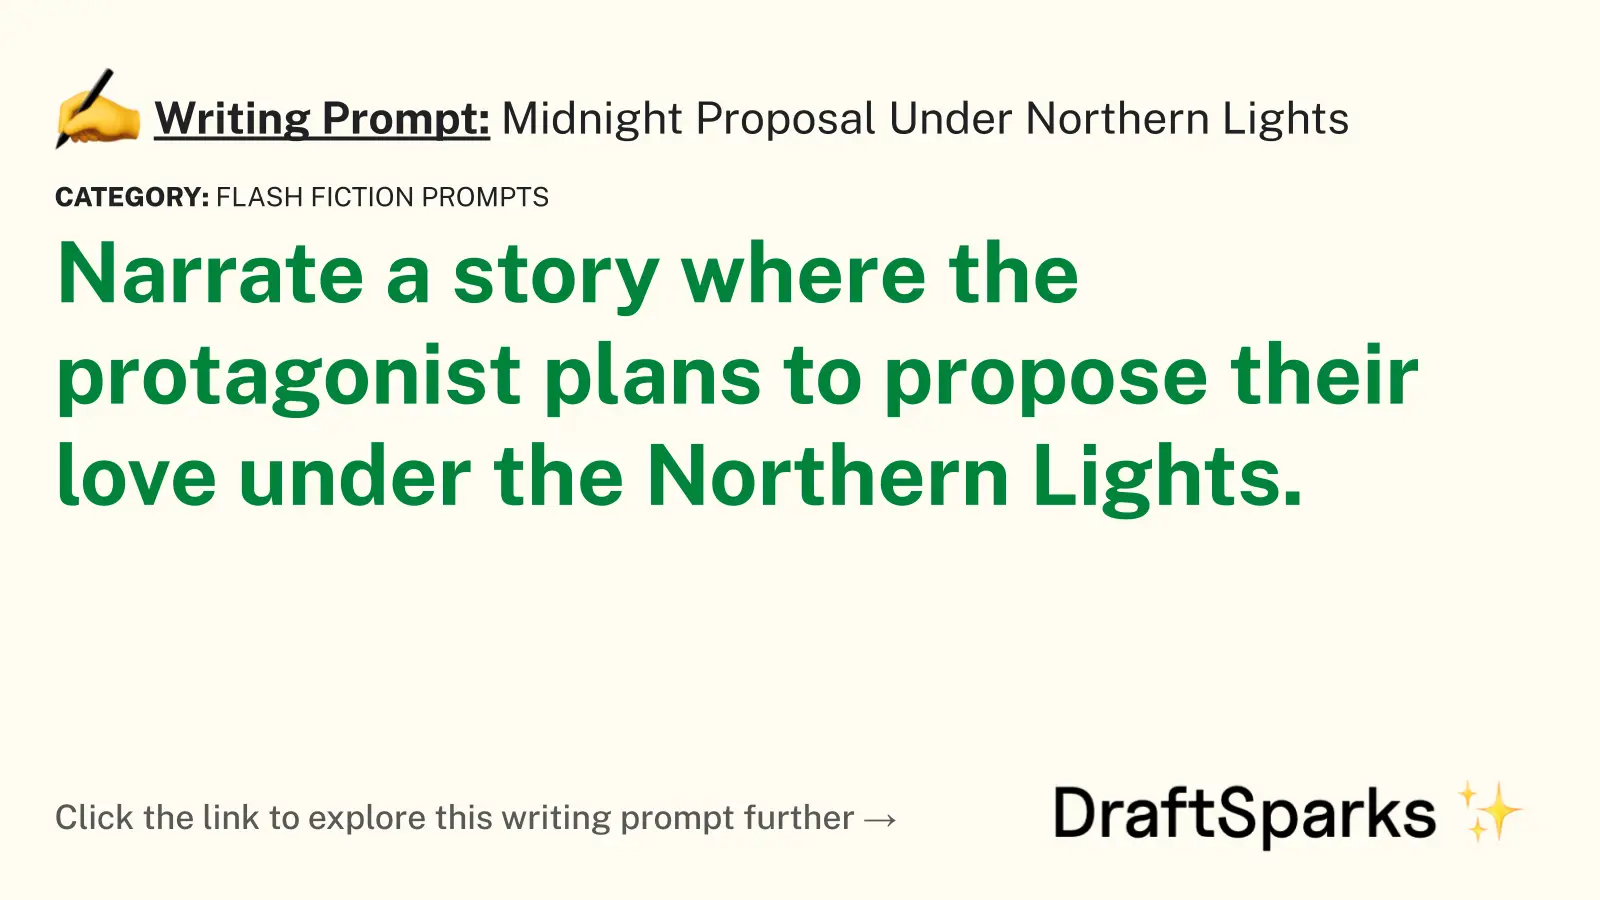 Midnight Proposal Under Northern Lights